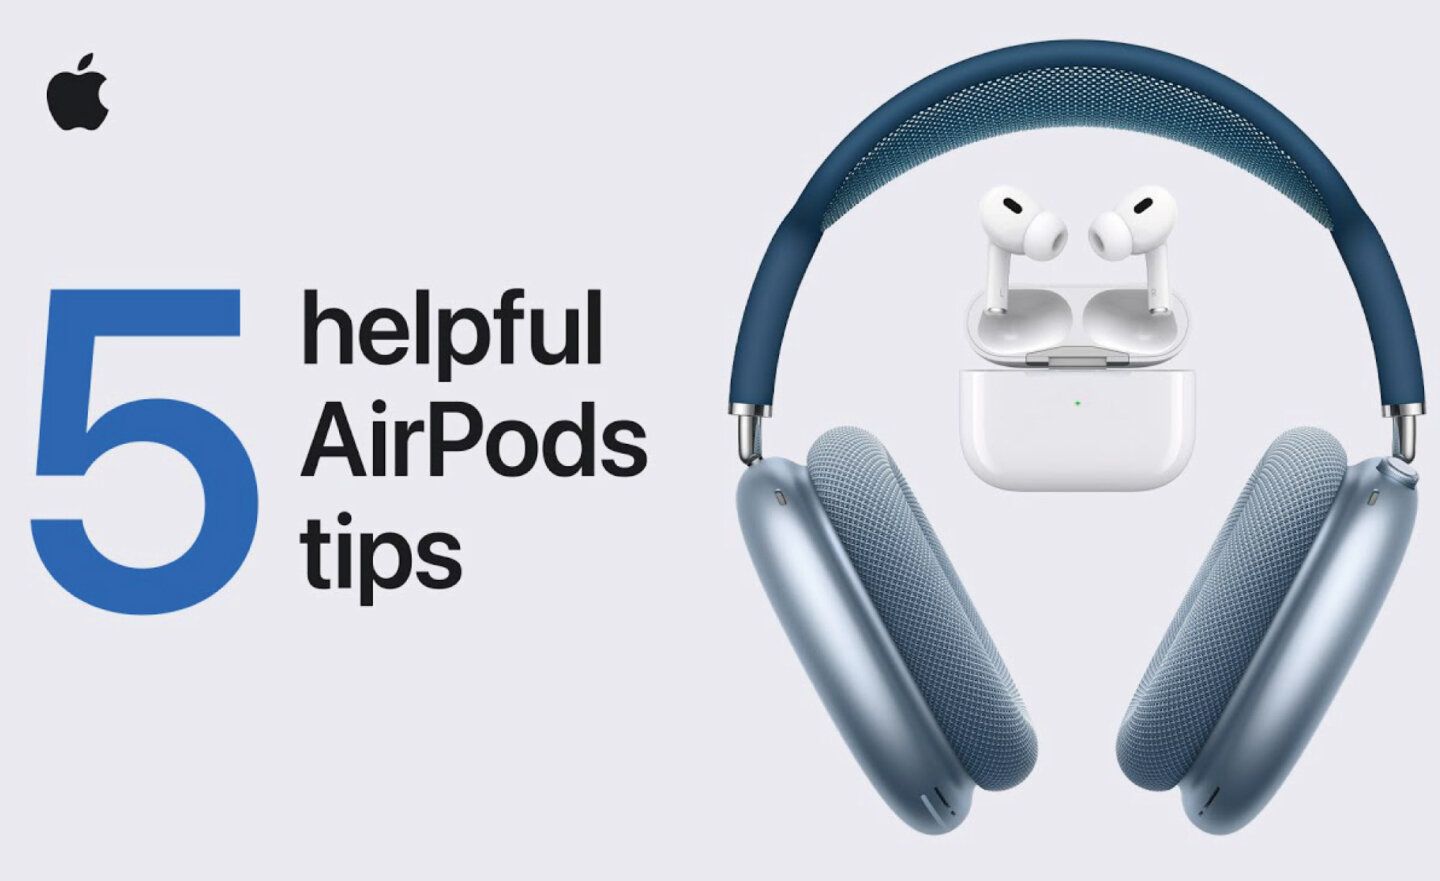 【教學】Apple 蘋果官方影片分享 5 個實用的 AirPods 使用技巧